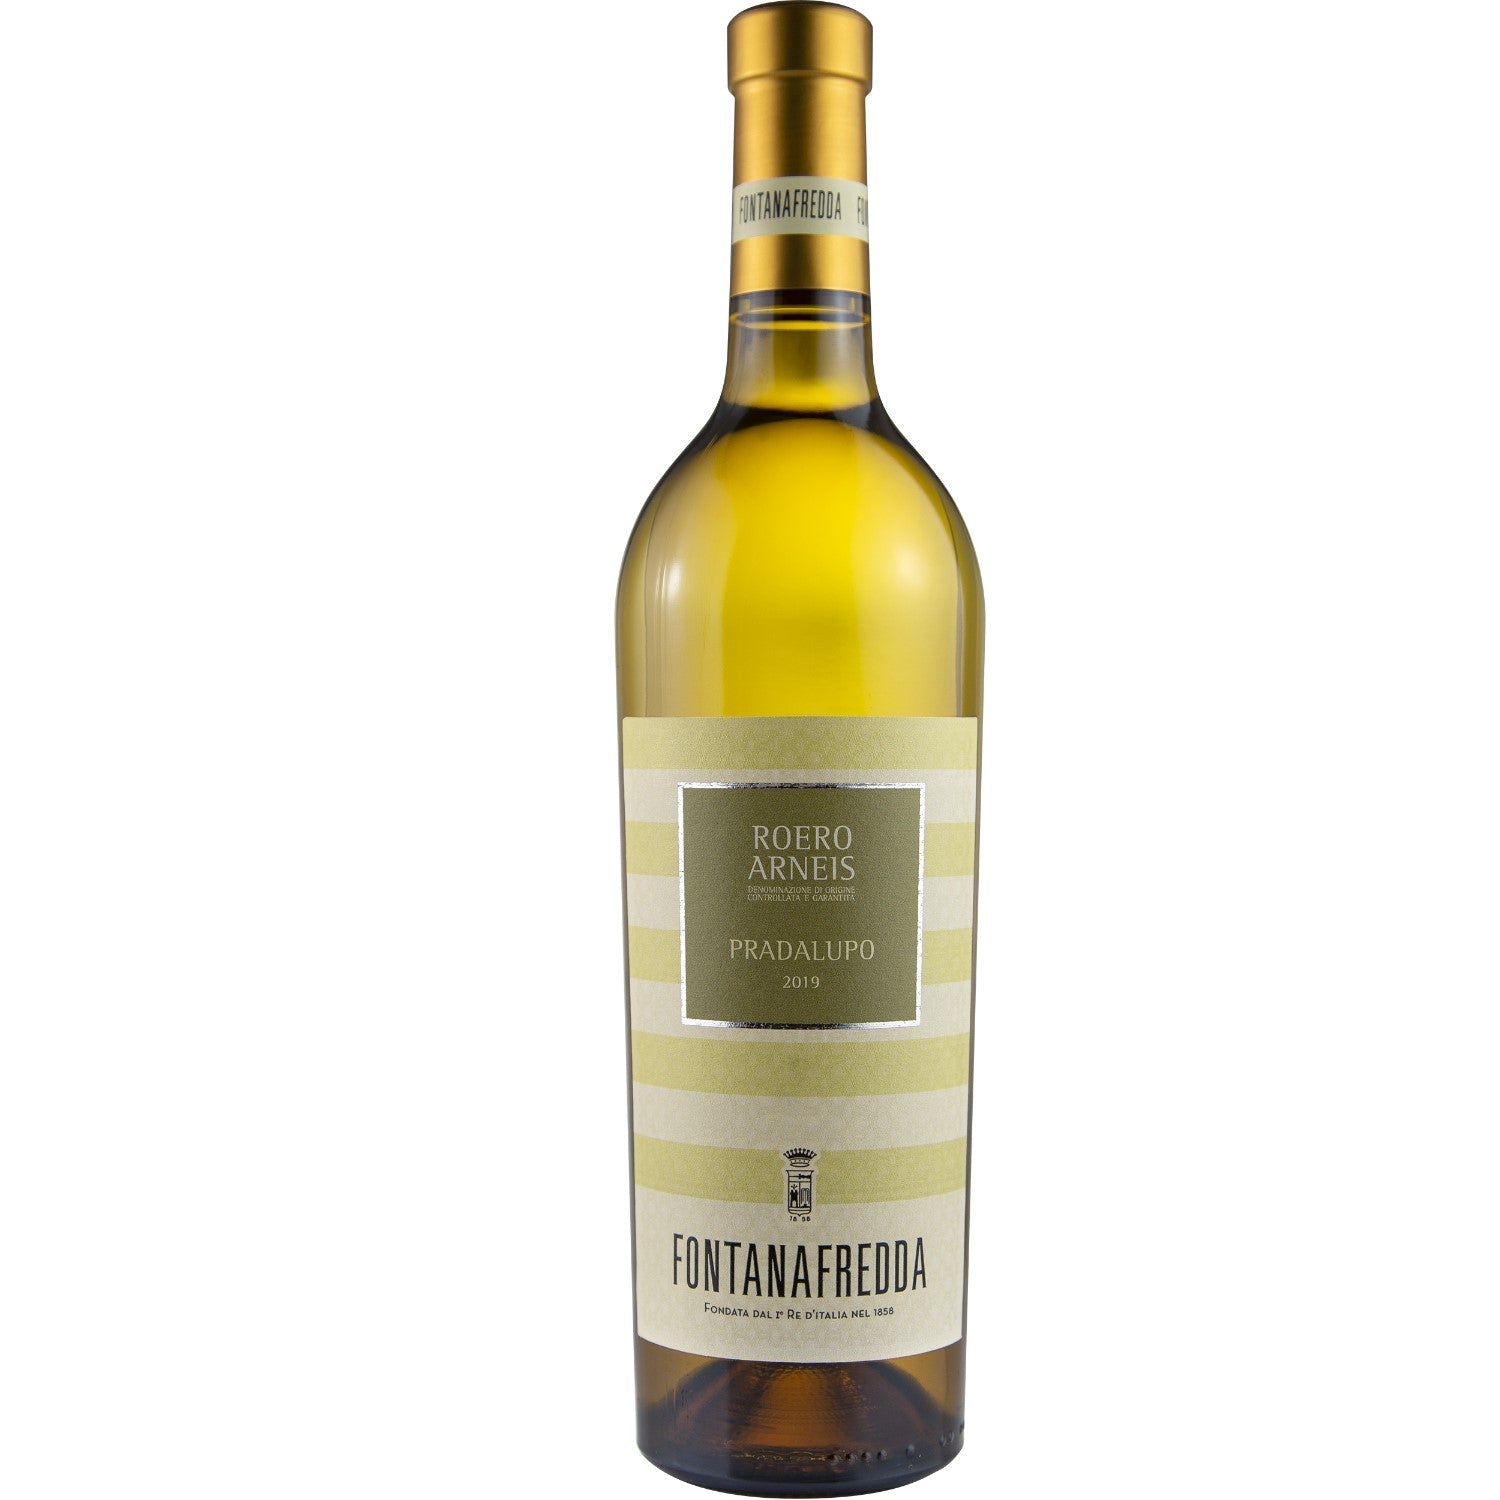 Fontanafredda Pradalupo Roero Arneis DOCG Weißwein Wein trocken Italien (12 x 0.75l) - Versanel -